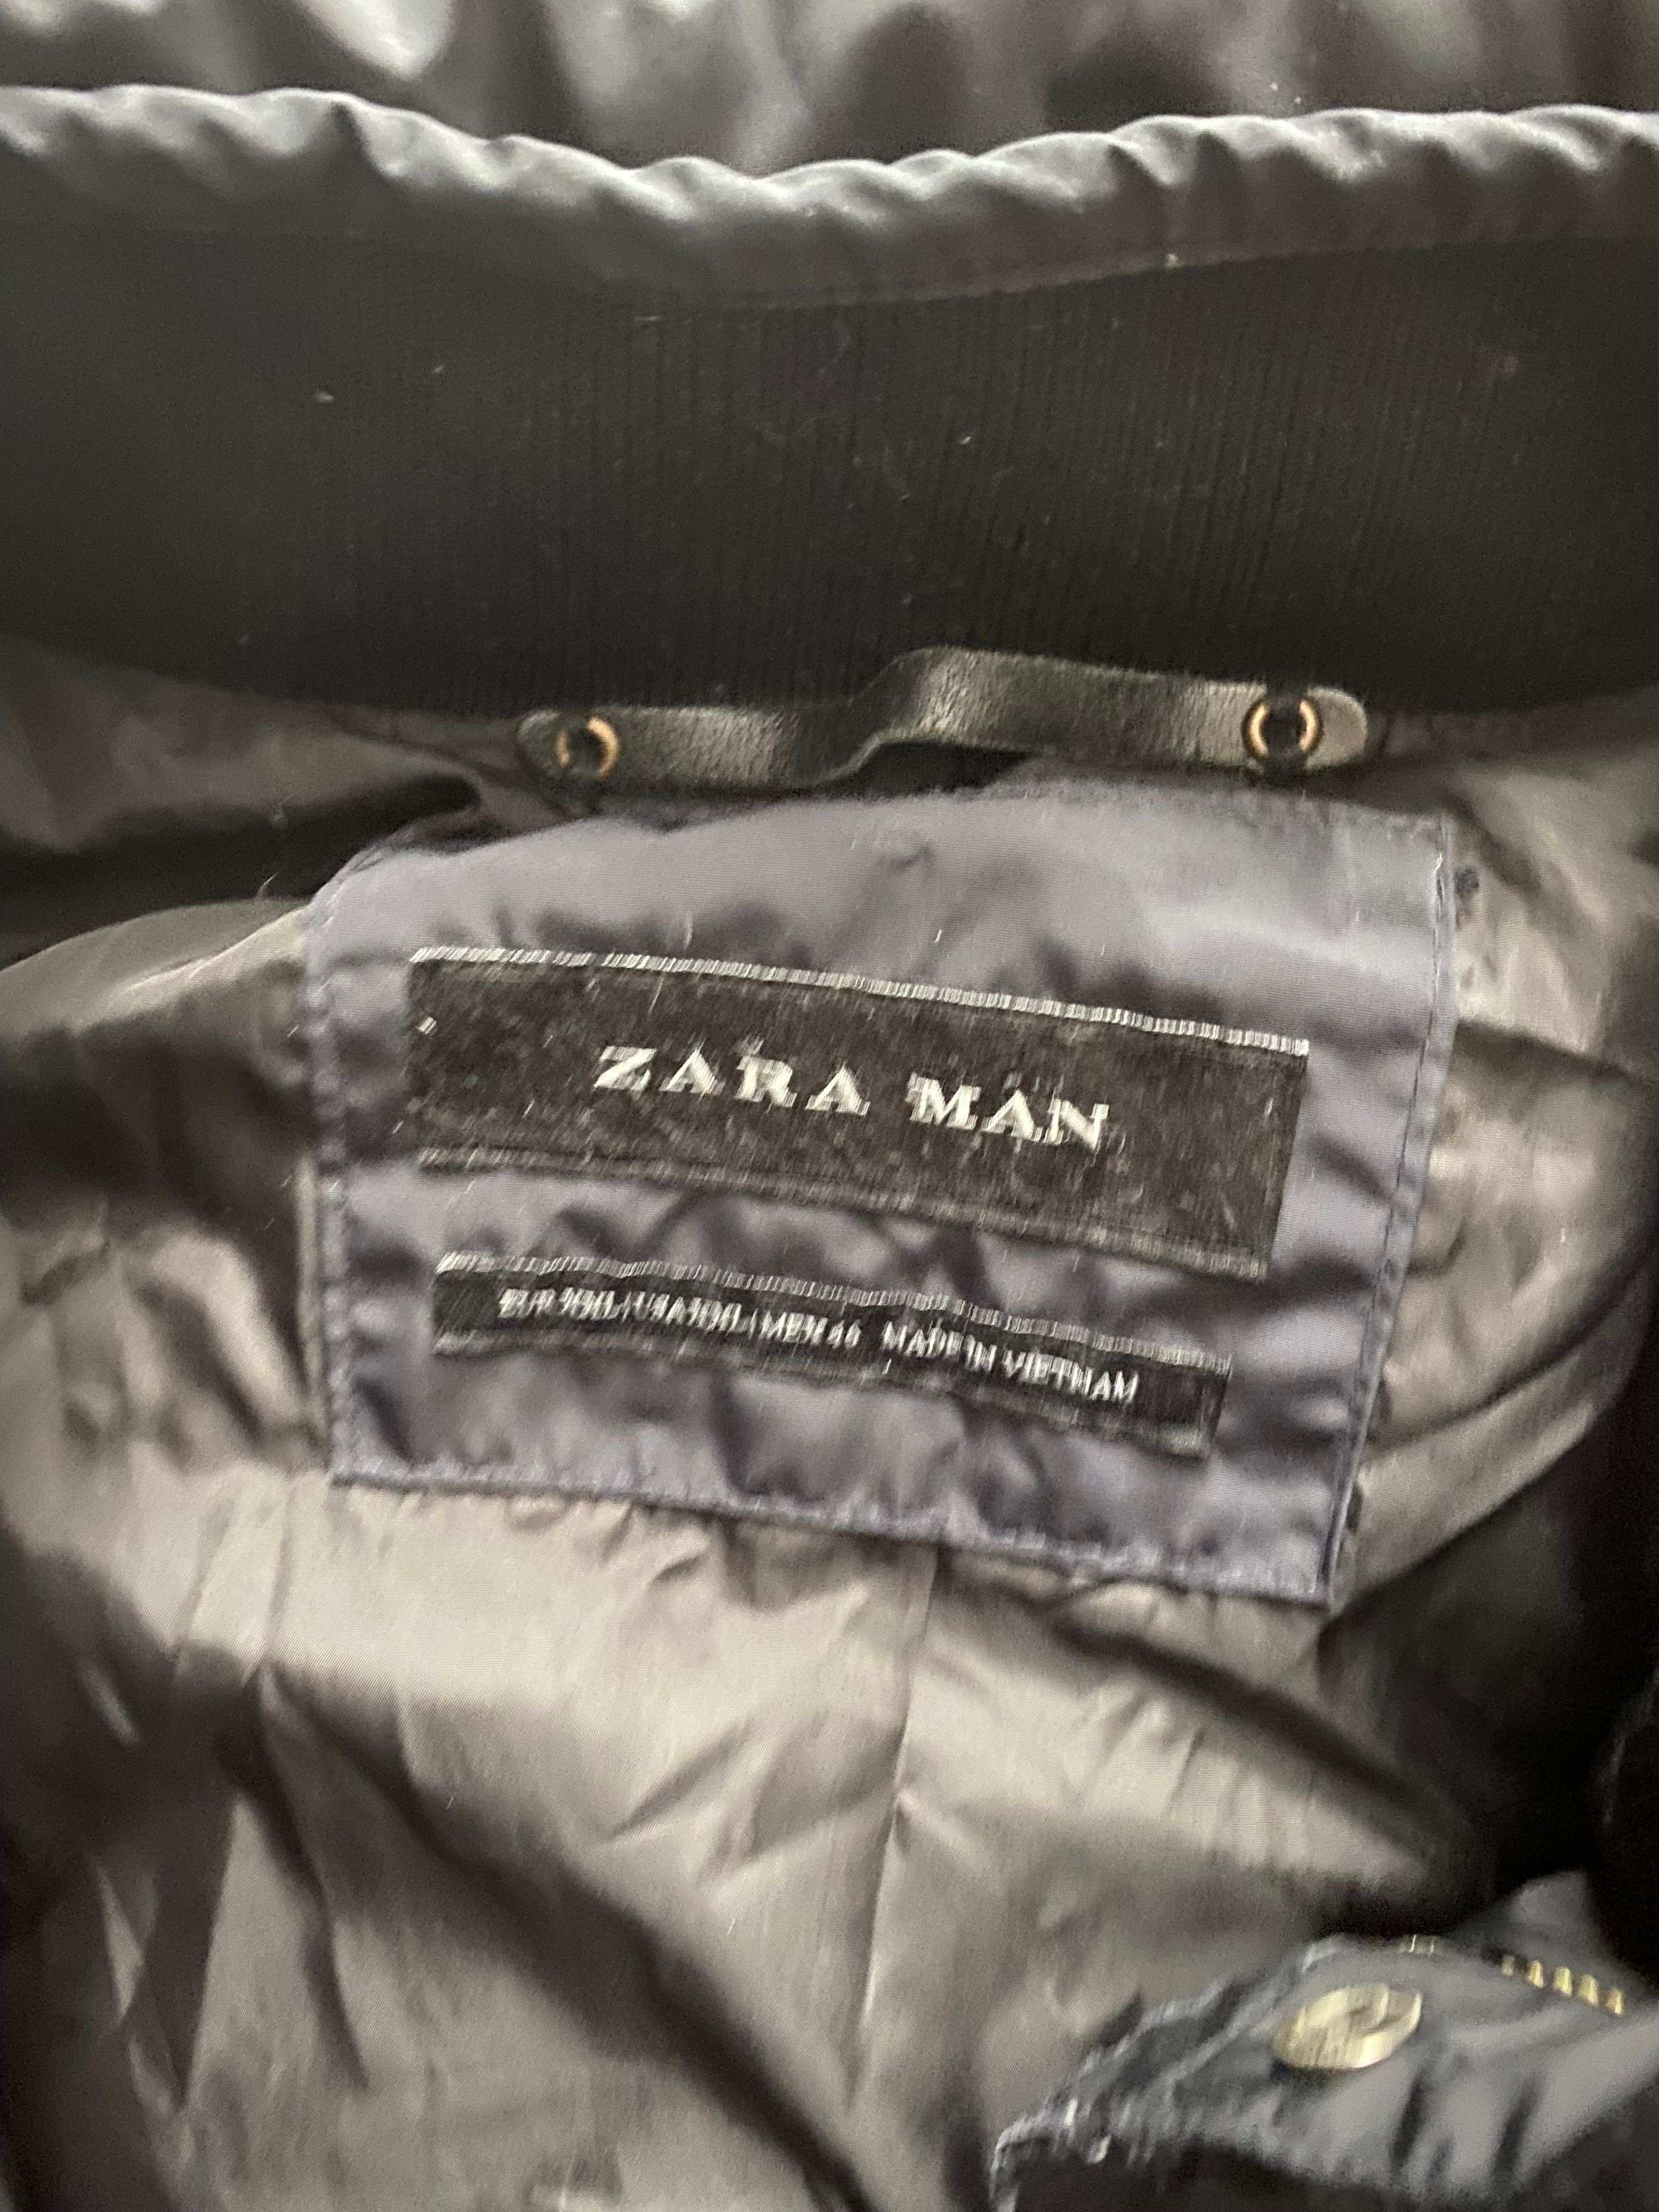 Kurtka marki Zara Man, w rozmiarze 2XL